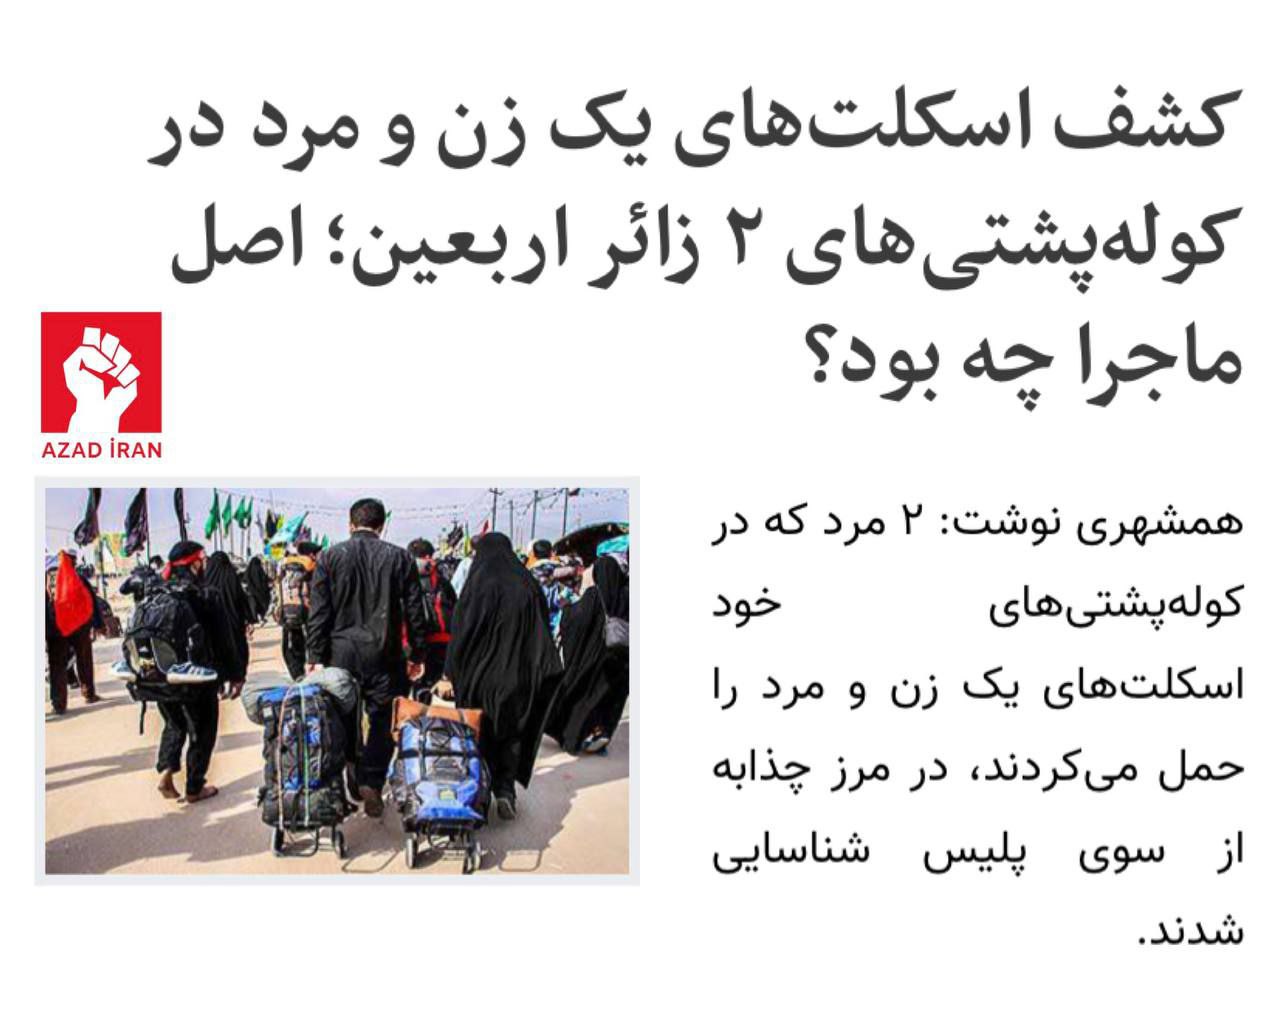 İranlı zəvvarların çantalarında insan skeletləri aşkarlandı